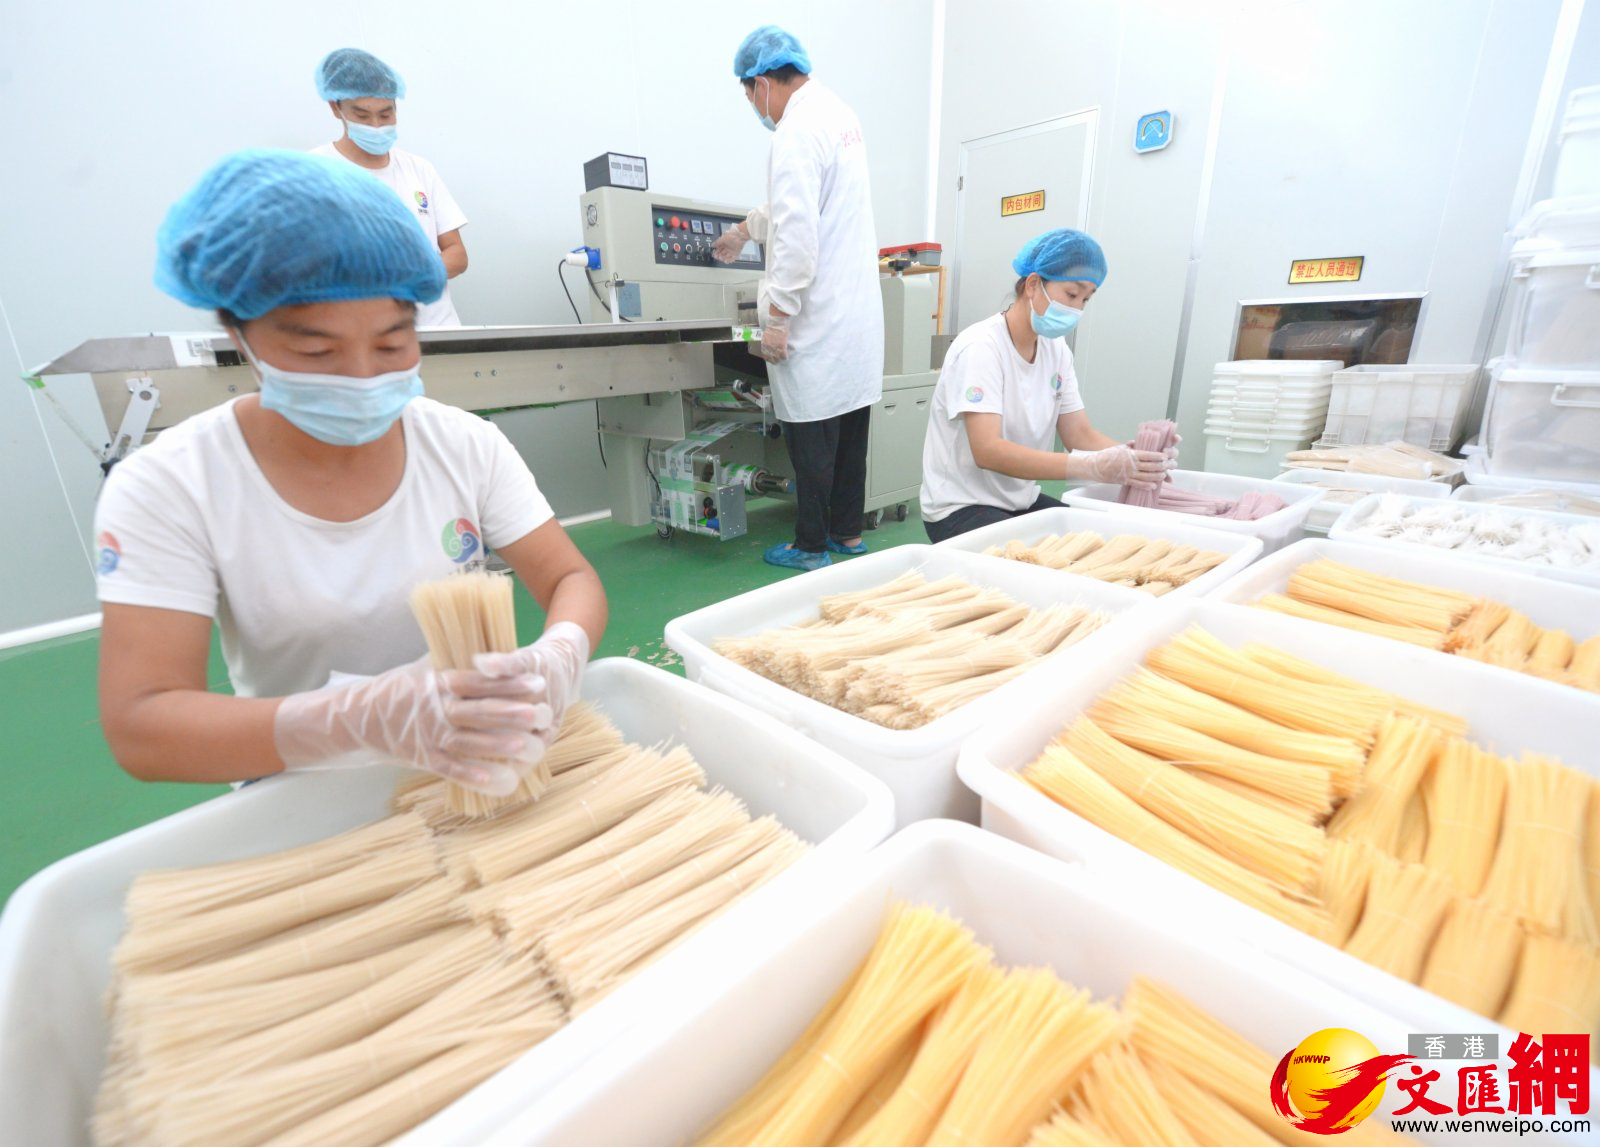 河北瑞熠天澱粉製造有限公司生產的無明礬粉條。（香港文匯網記者顧大鵬 攝）